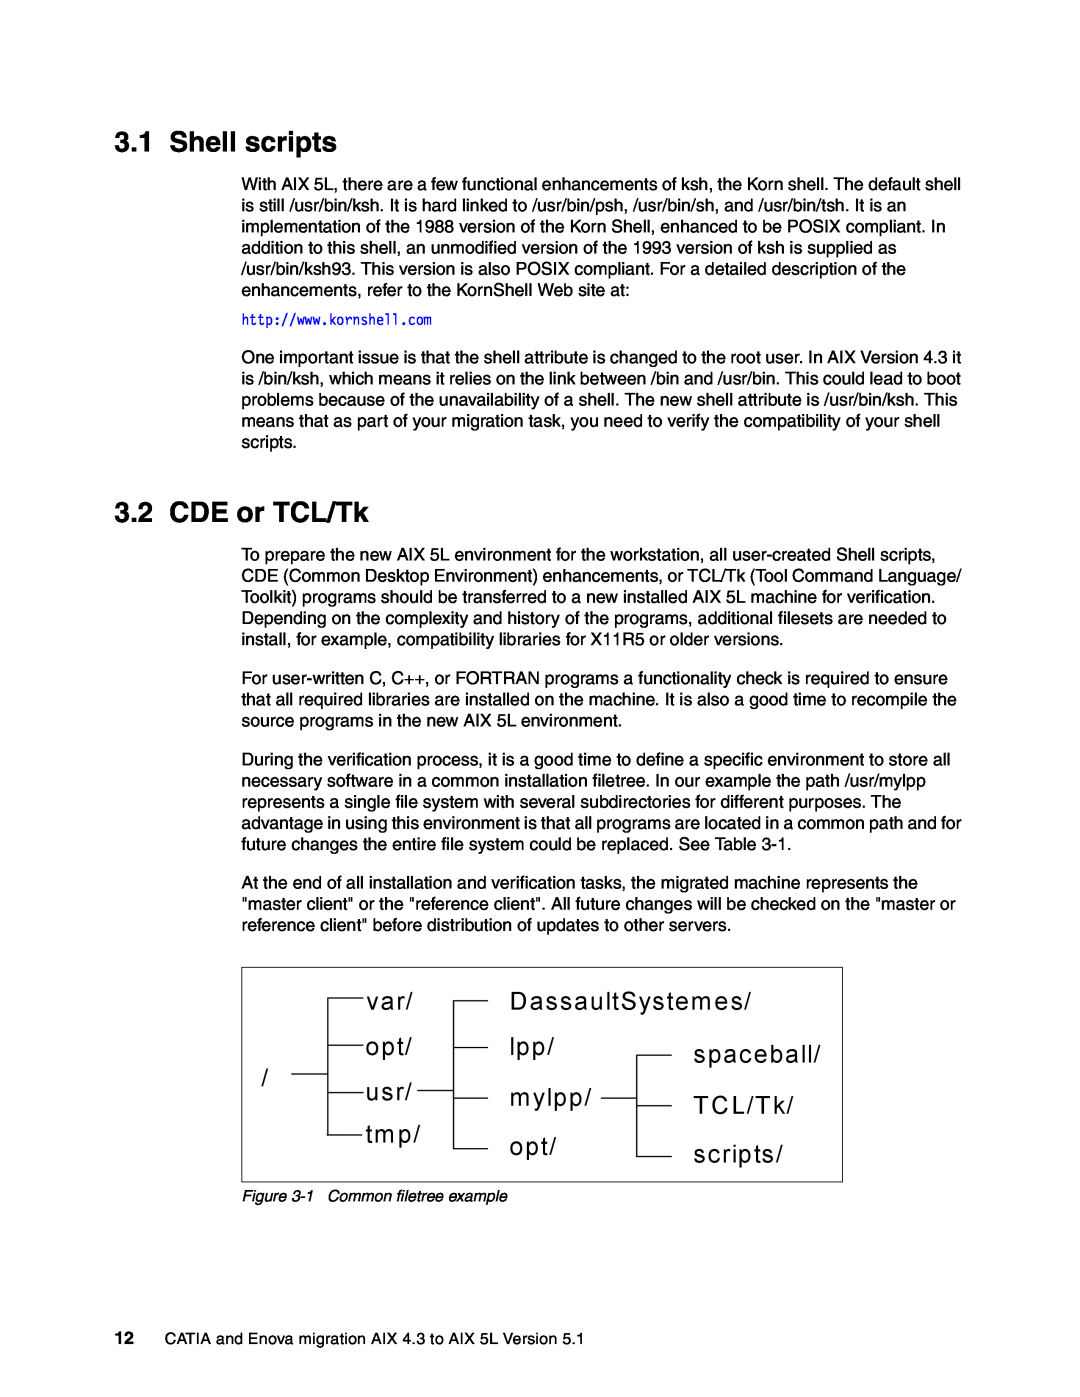 IBM AIX5L, AIX 4.3 manual Shell scripts, CDE or TCL/Tk 